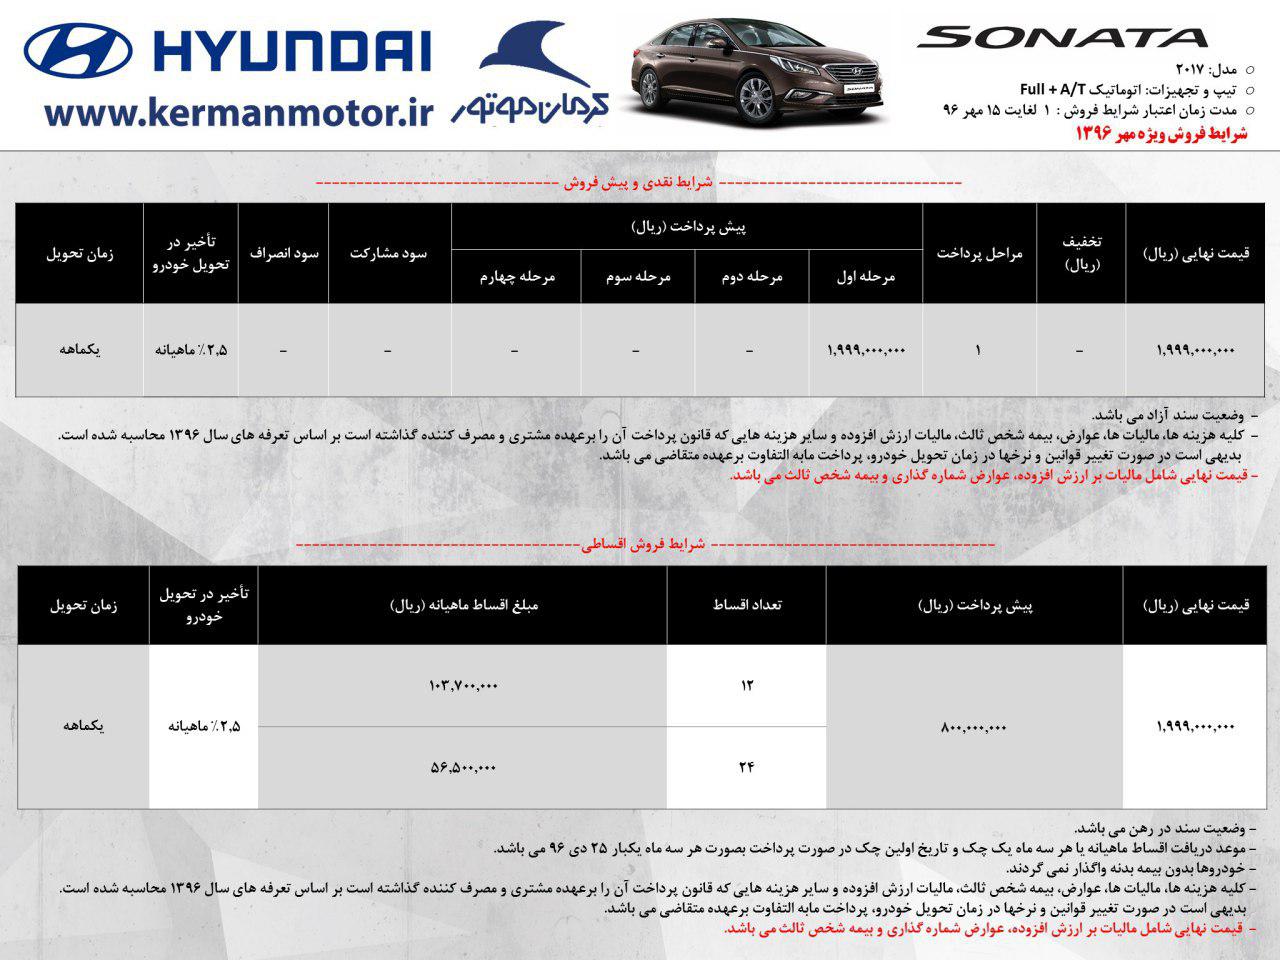  اعلام شرایط جدید فروش محصولات هیوندای شرکت کرمان موتور-6-96 